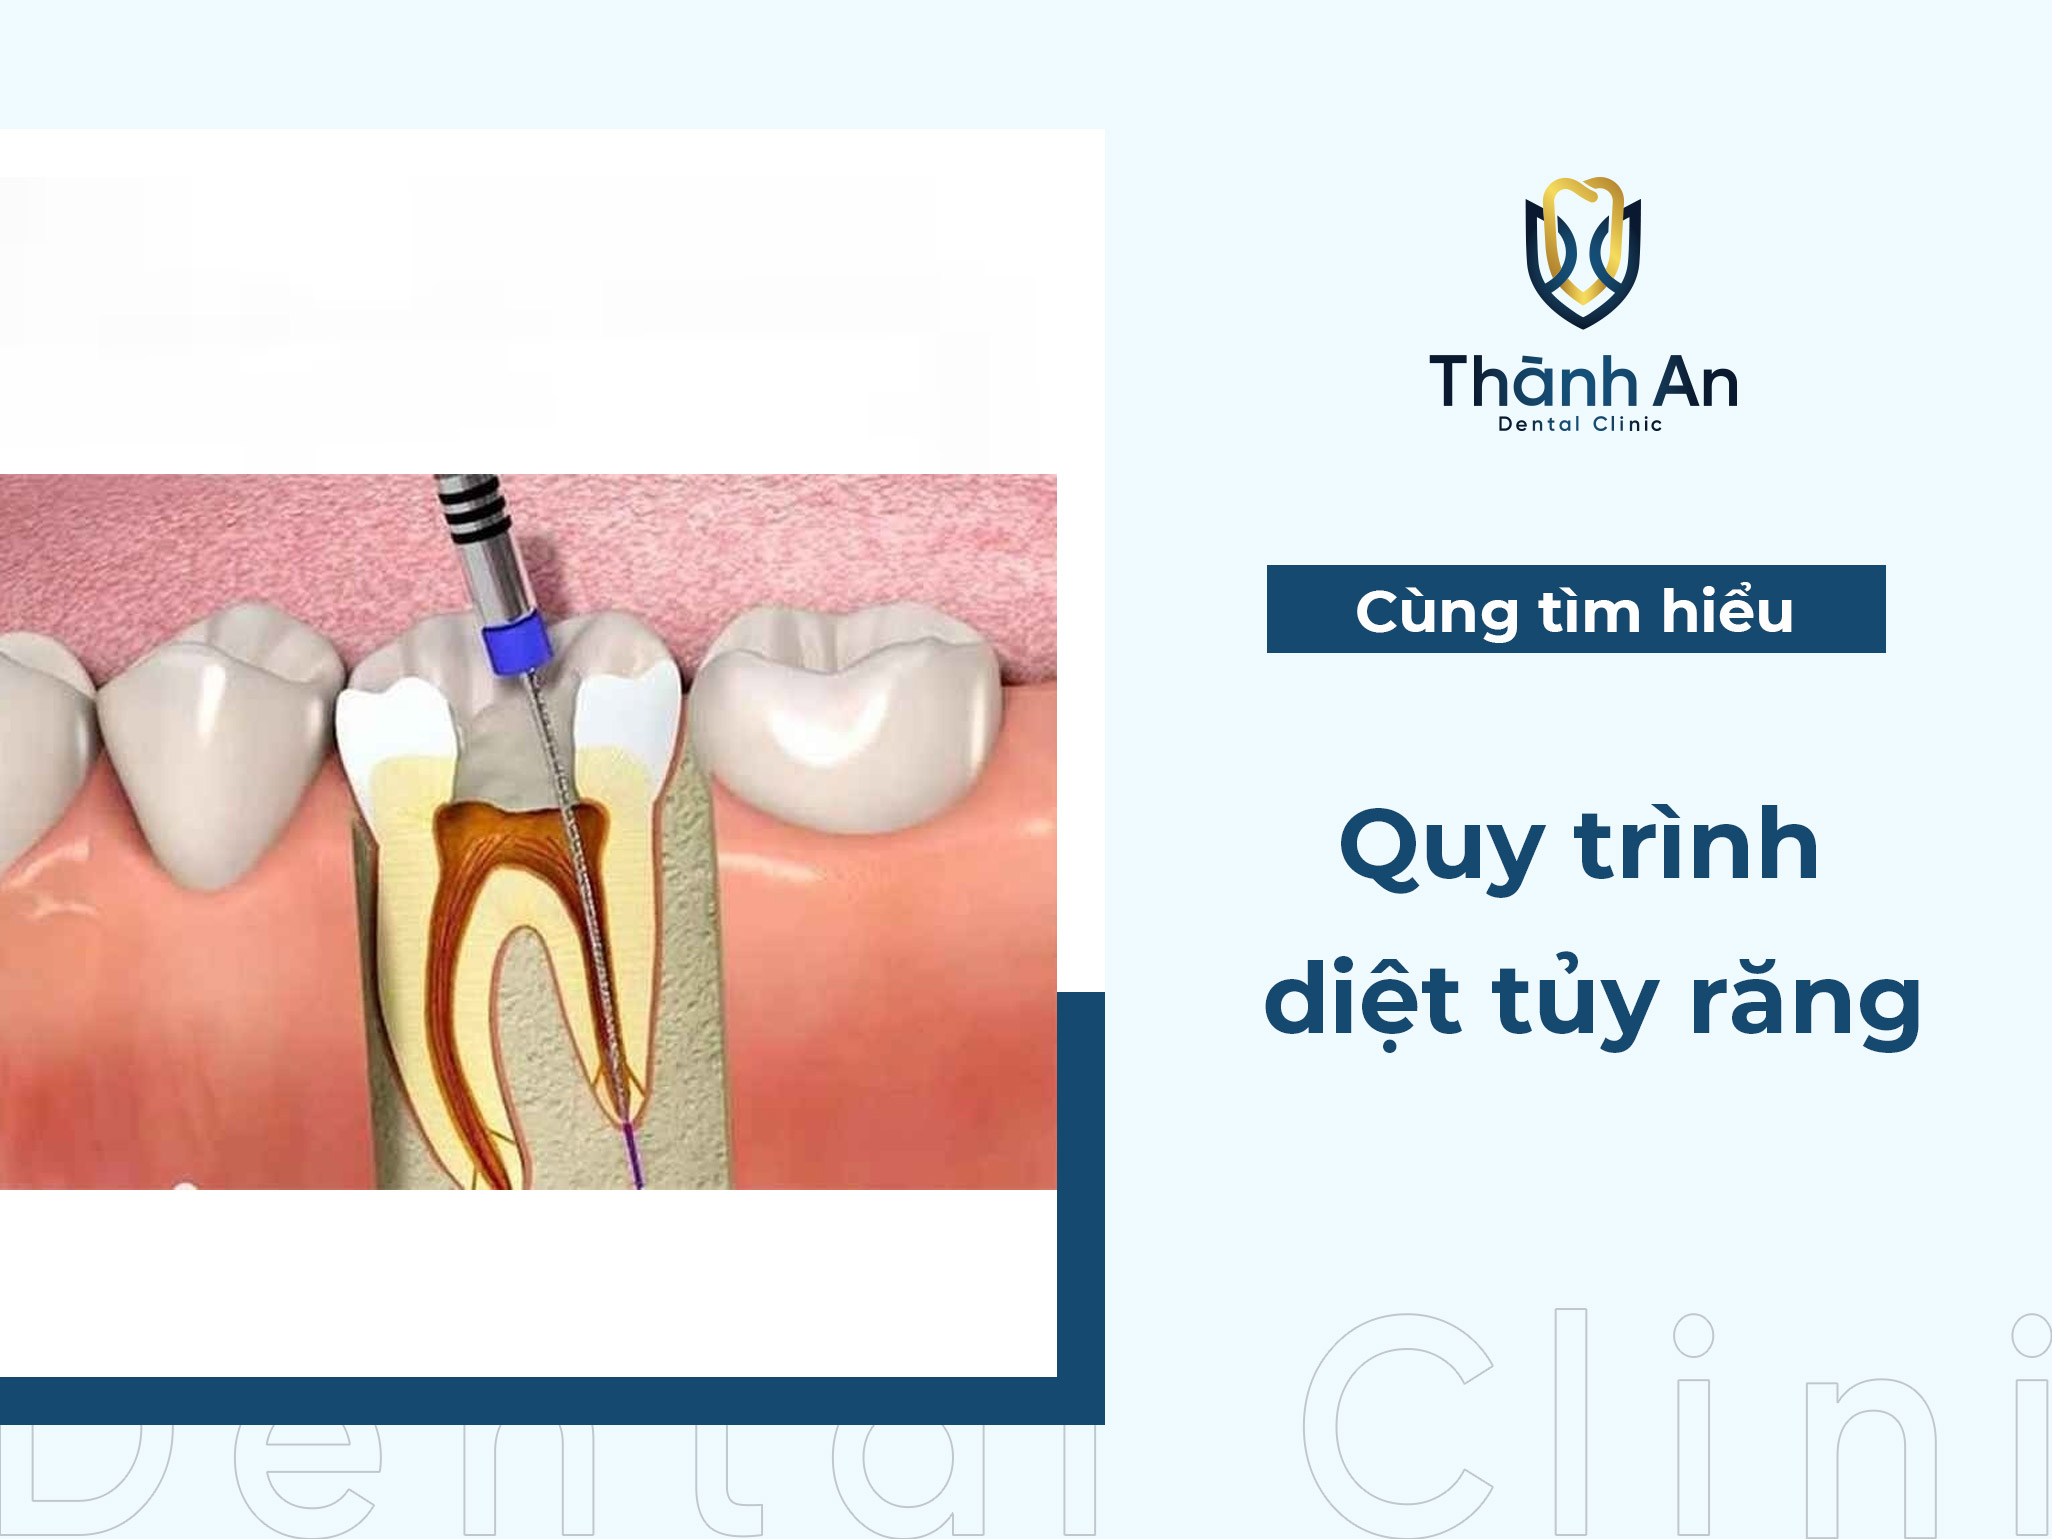 Tìm hiểu quy trình diệt tủy răng không đau, an toàn và giá rẻ